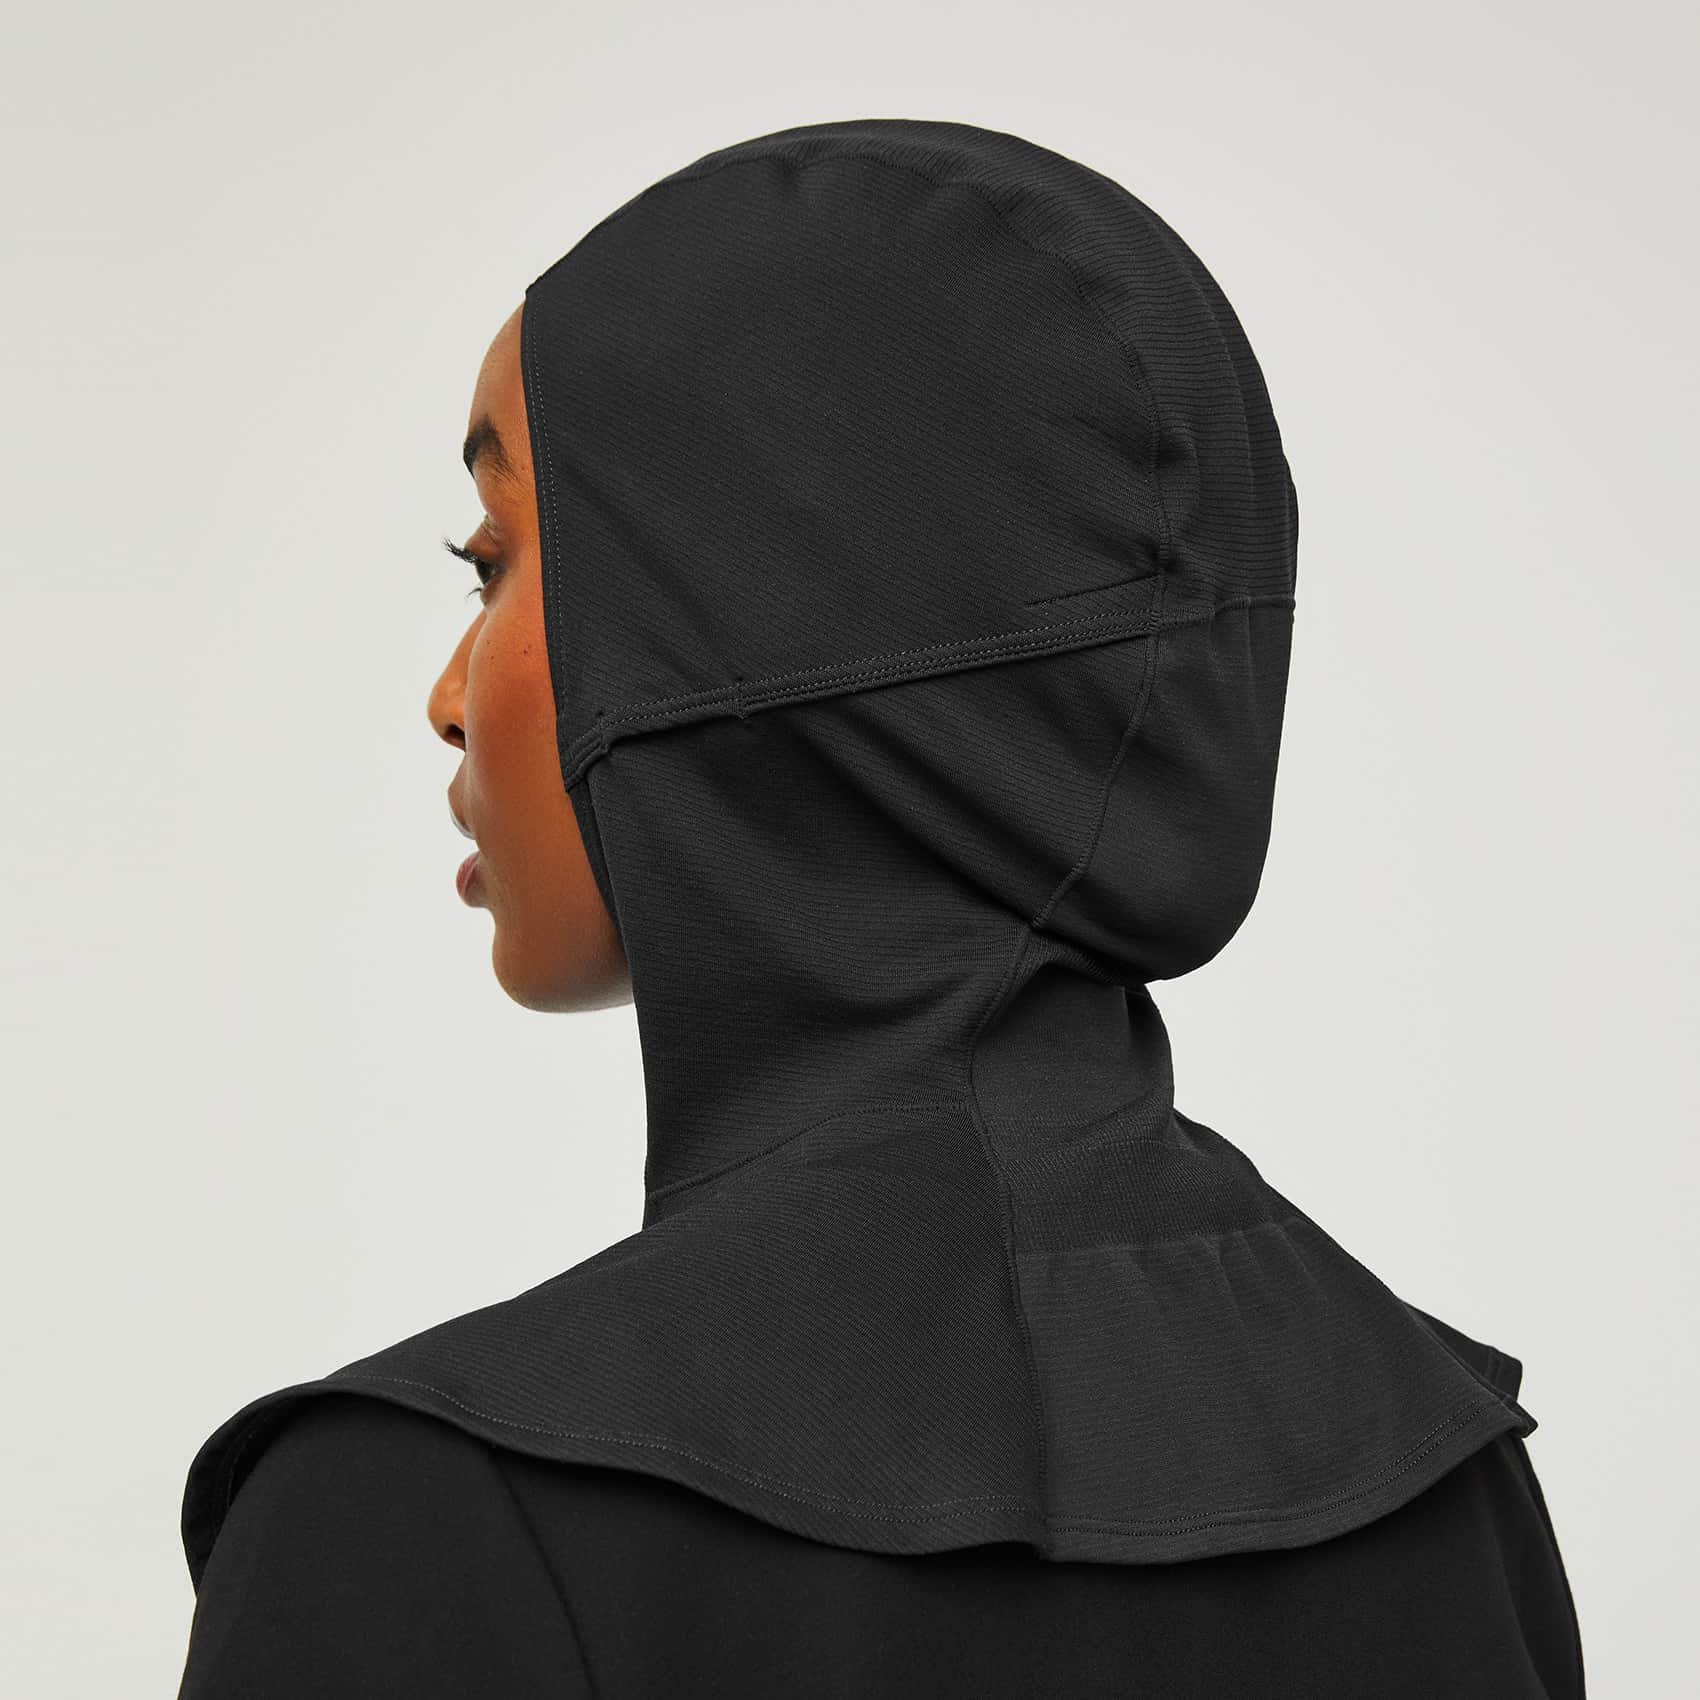 https://cdn.shopify.com/s/files/1/0139/8942/products/Womens-Hijab-black-5.jpg?v=1635381501